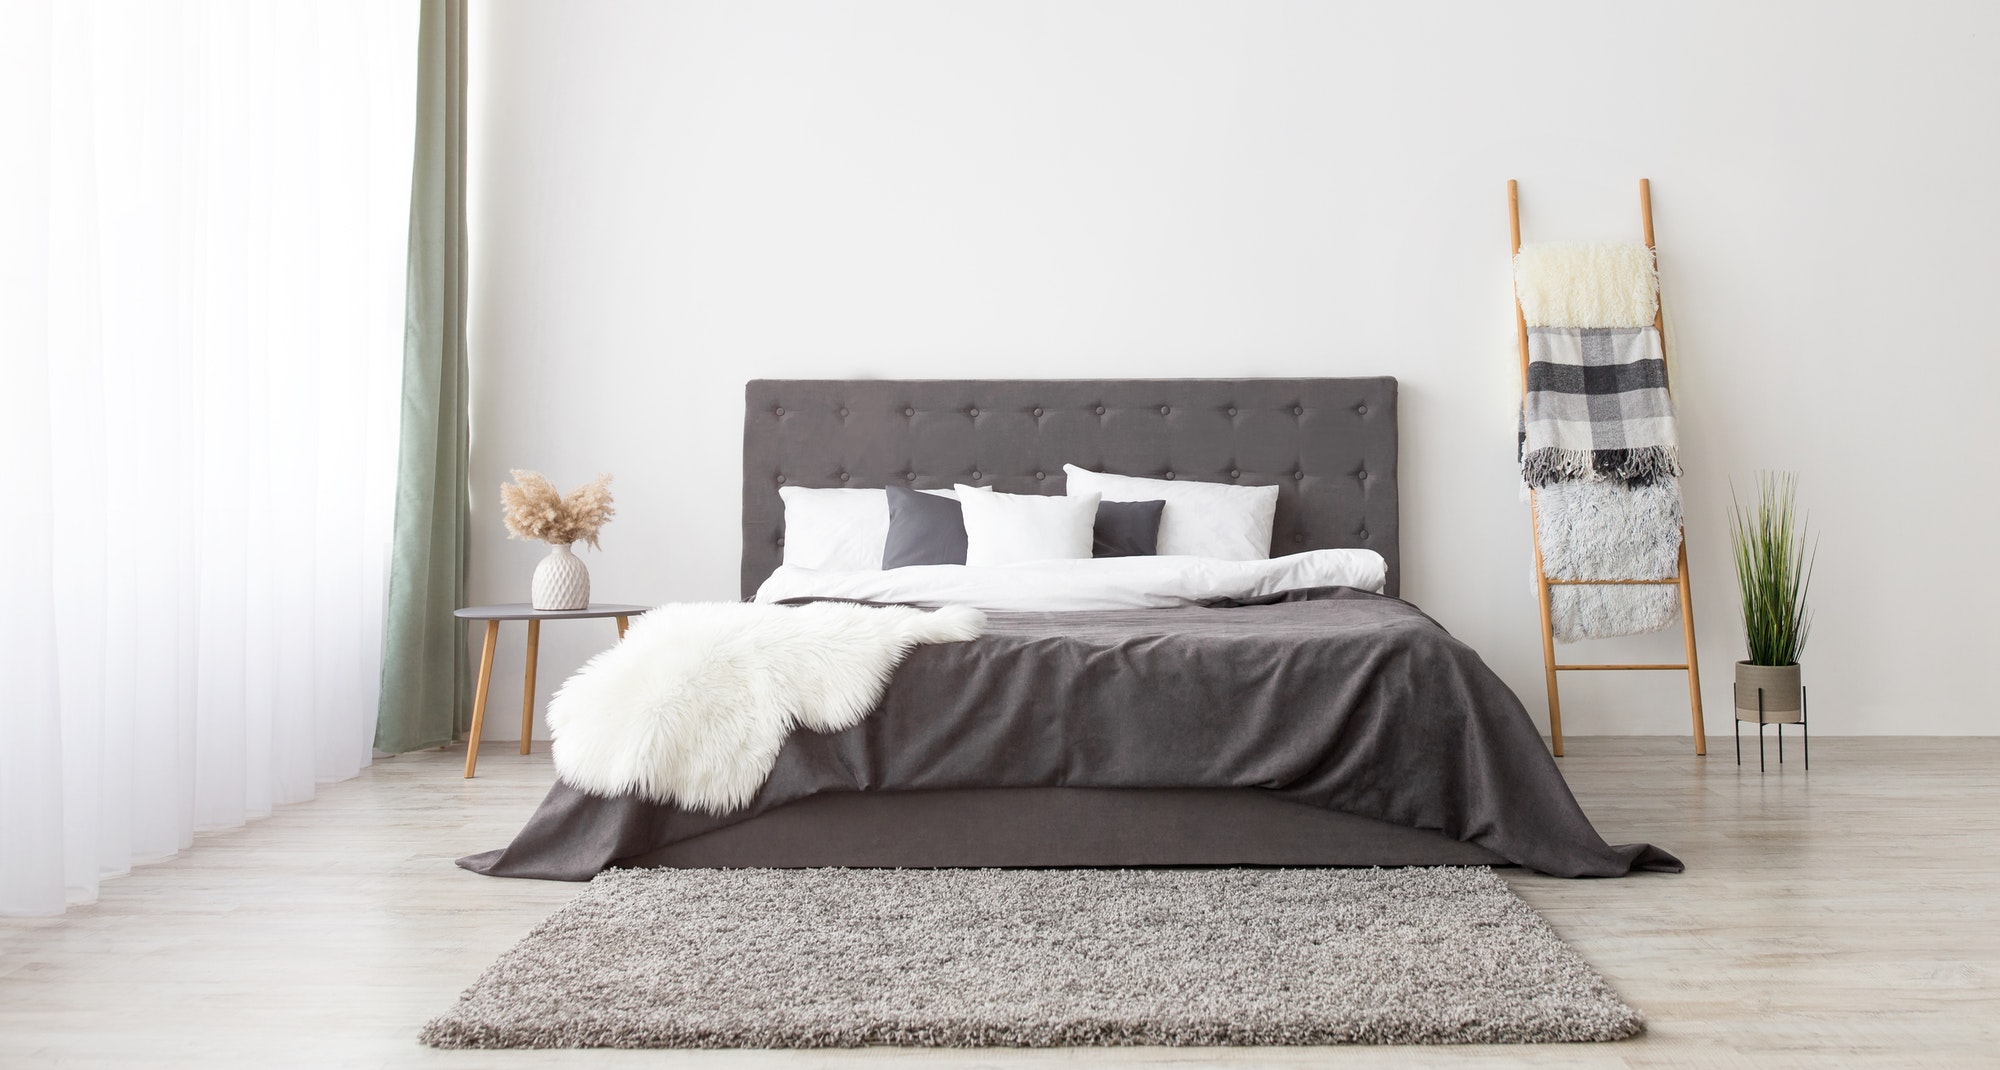 Cozy bedroom in scandinavian minimalist style, panorama